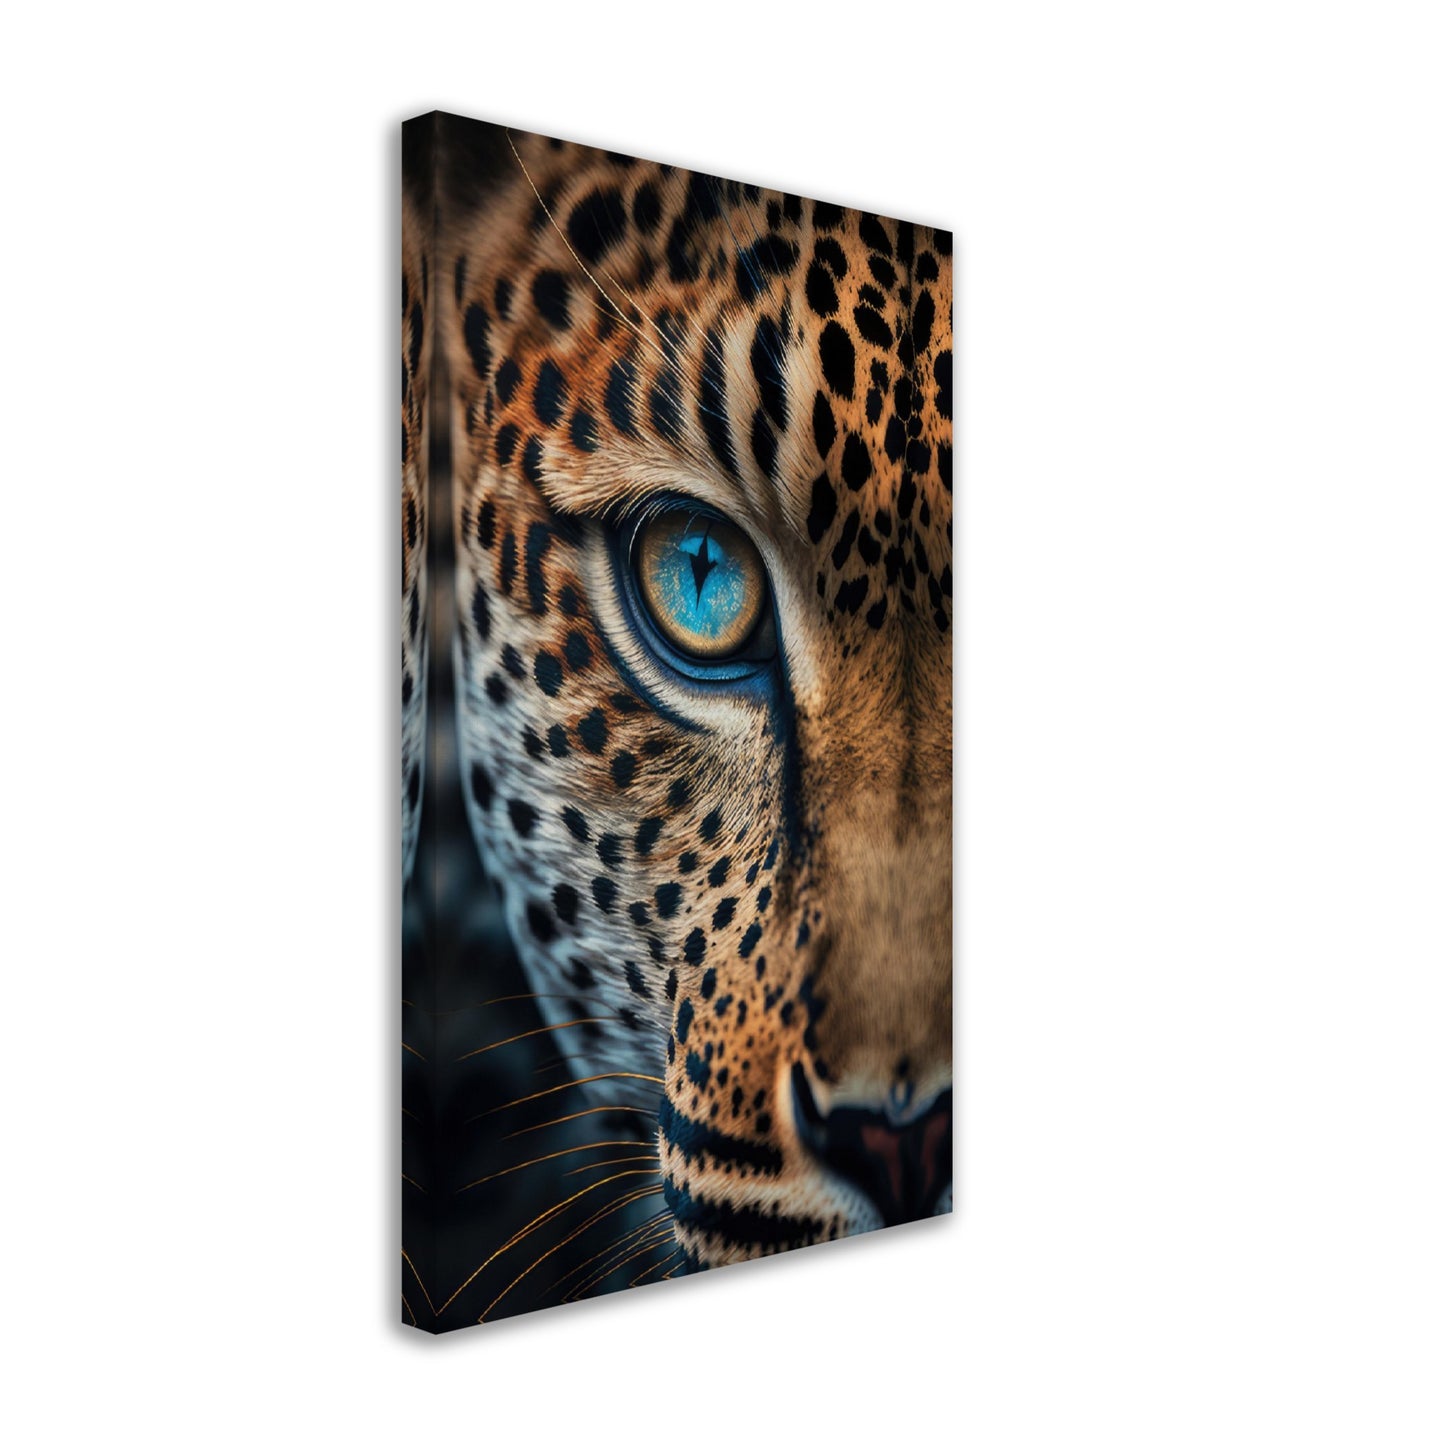 Leopard Grace - Leoparden Wandbild - Animals Close Up Leinwand ColorWorld im Hochformat - Coole Tier-Porträts & Animals Kunstdruck